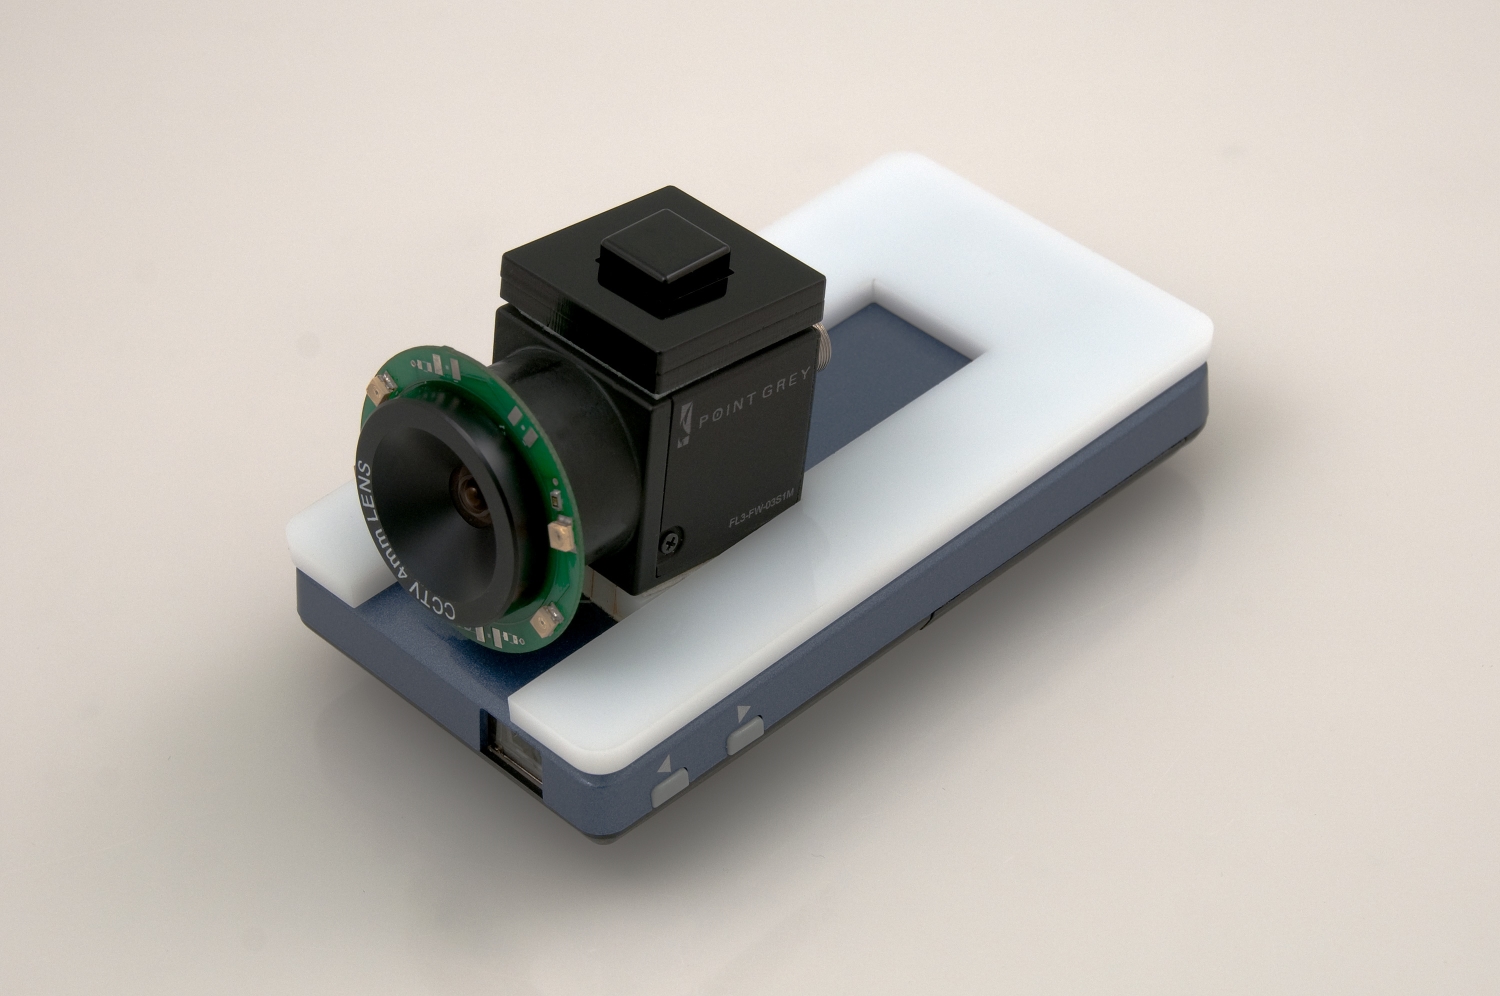 Le prototype de réalité augmentée 3D HideOut, conçu par le laboratoire de Disney, repose sur un picoprojecteur mobile associé à une caméra sensible à l'infrarouge et équipée de quatre Led émettant dans ce domaine du spectre invisible aux yeux humains. © Disney Research